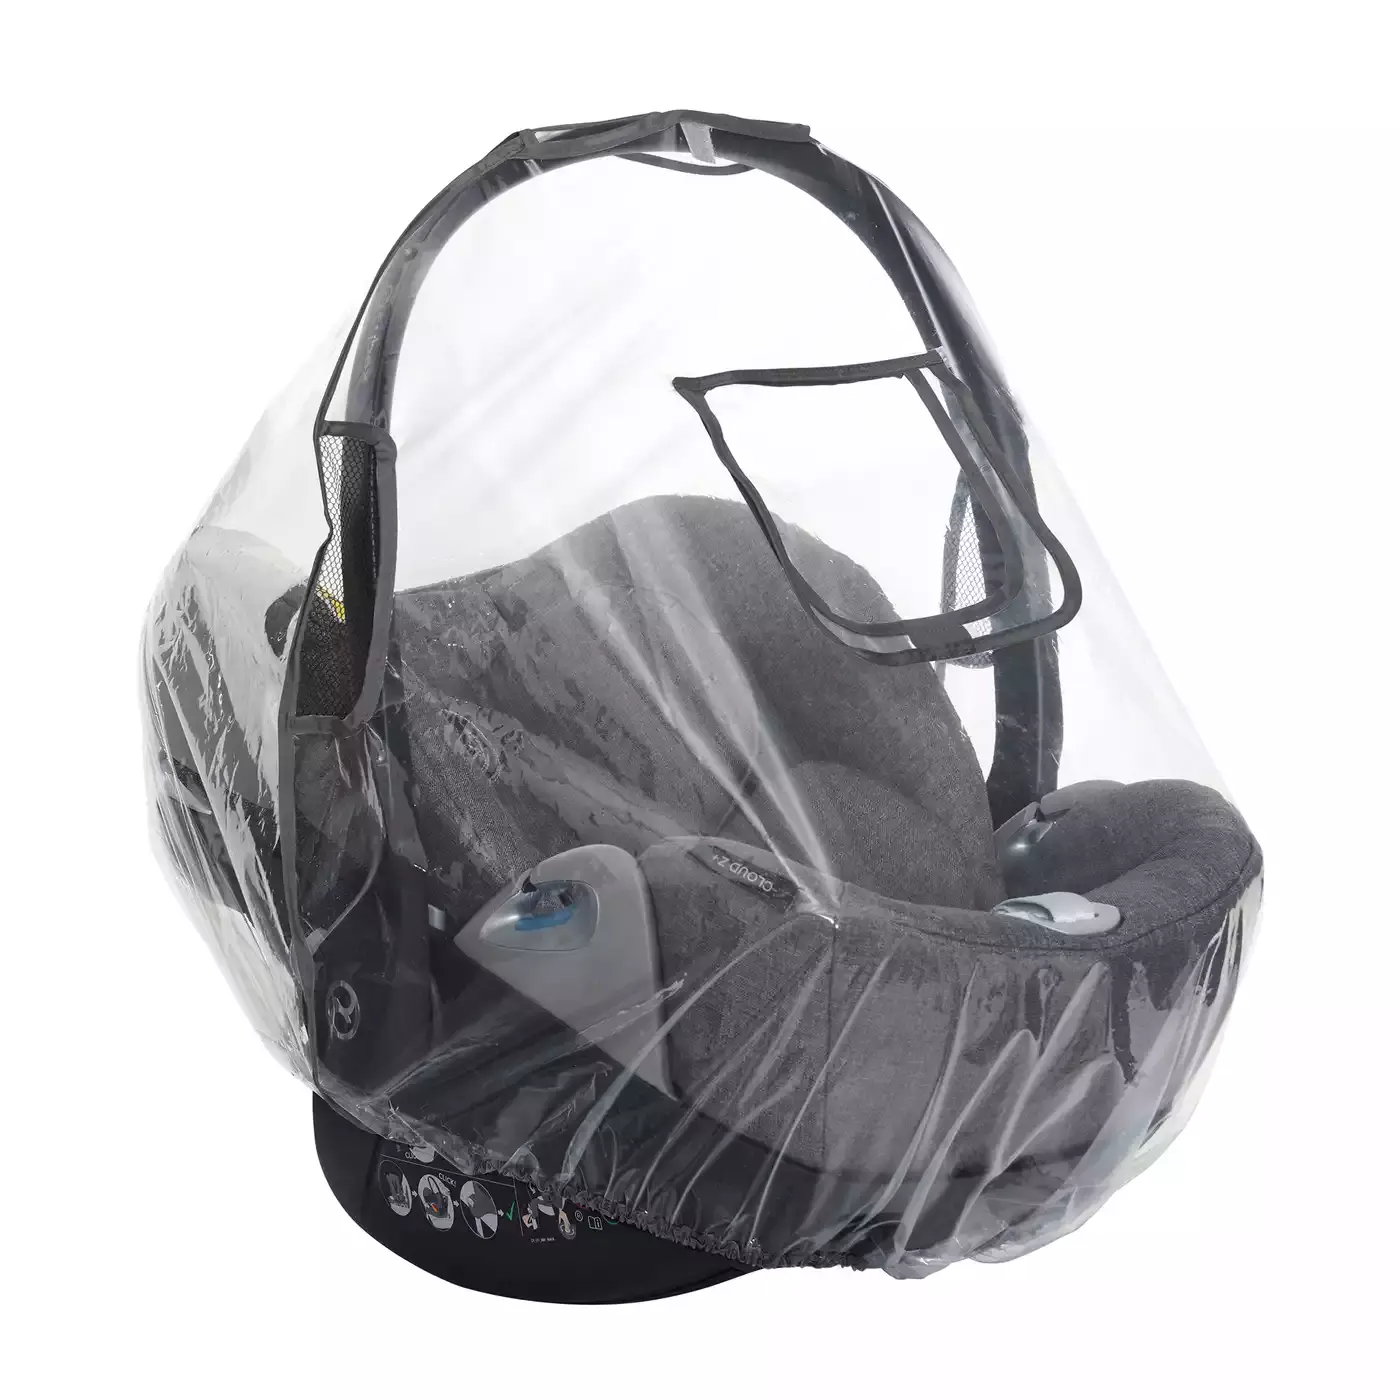 Regenschutz für Babyschalen online kaufen: Top Auswahl